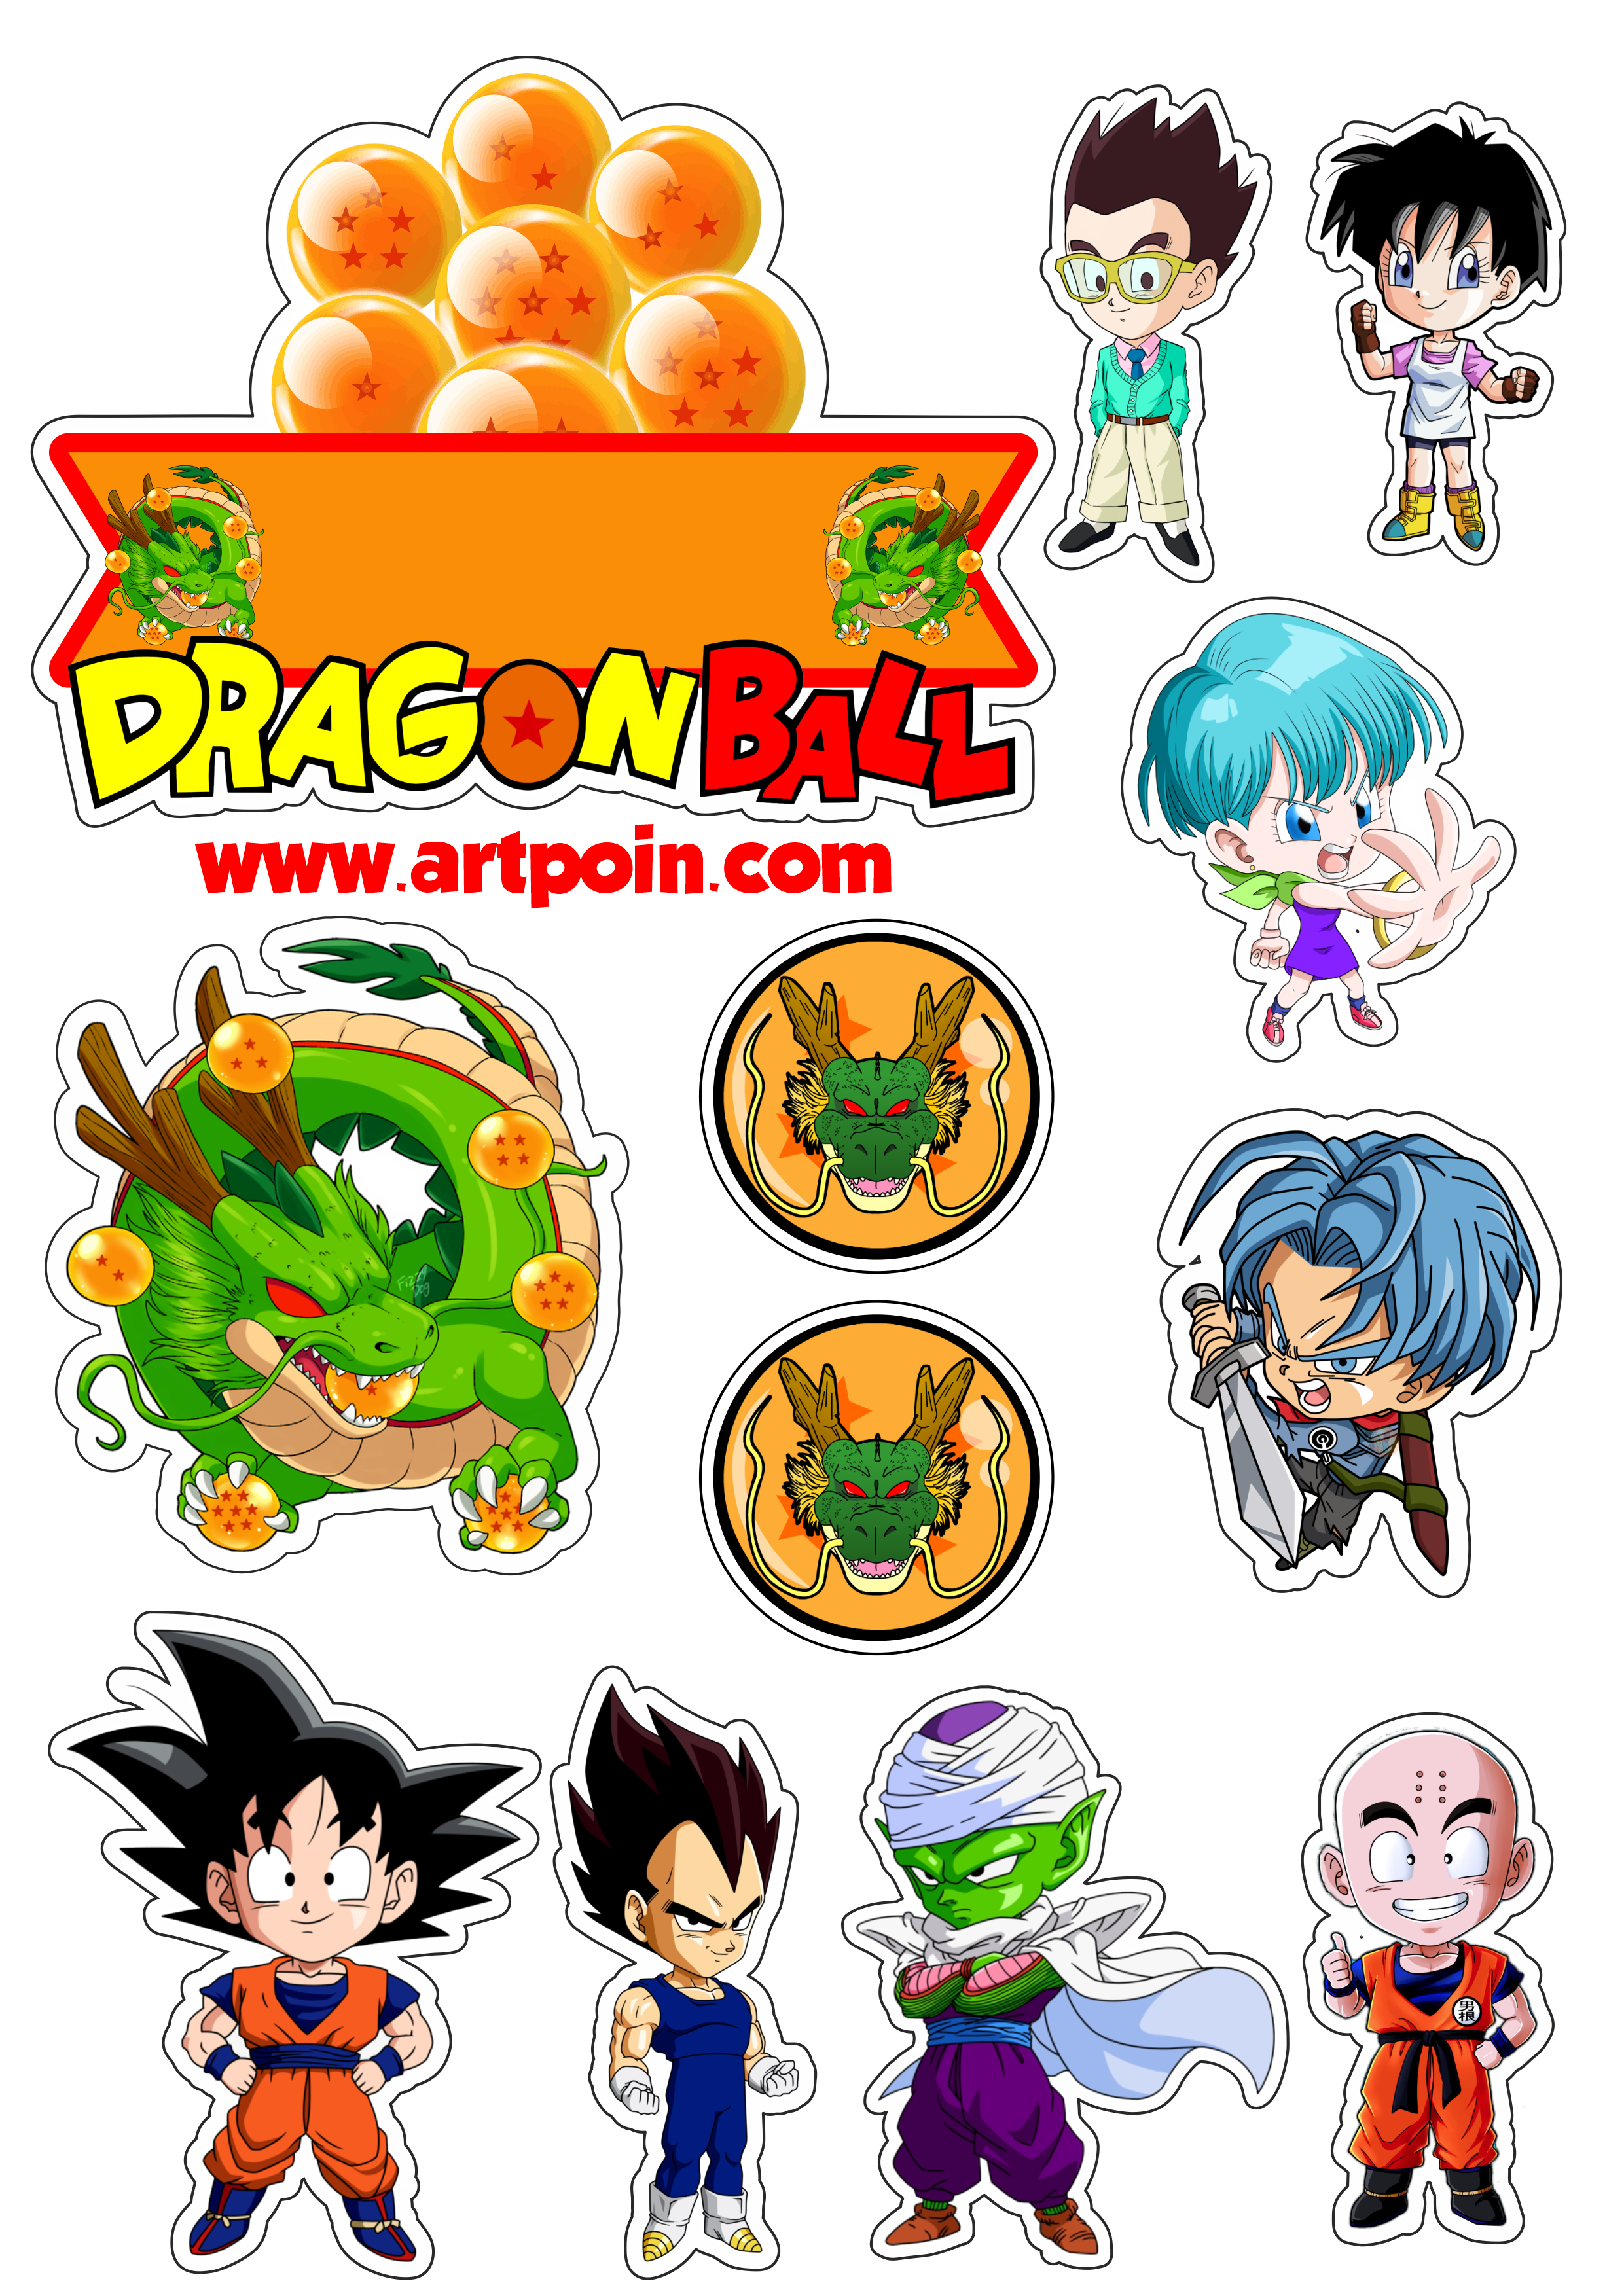 Dragon Balls  Dragon ball gt, Esferas do dragão, Decoração de festa dragon  ball z